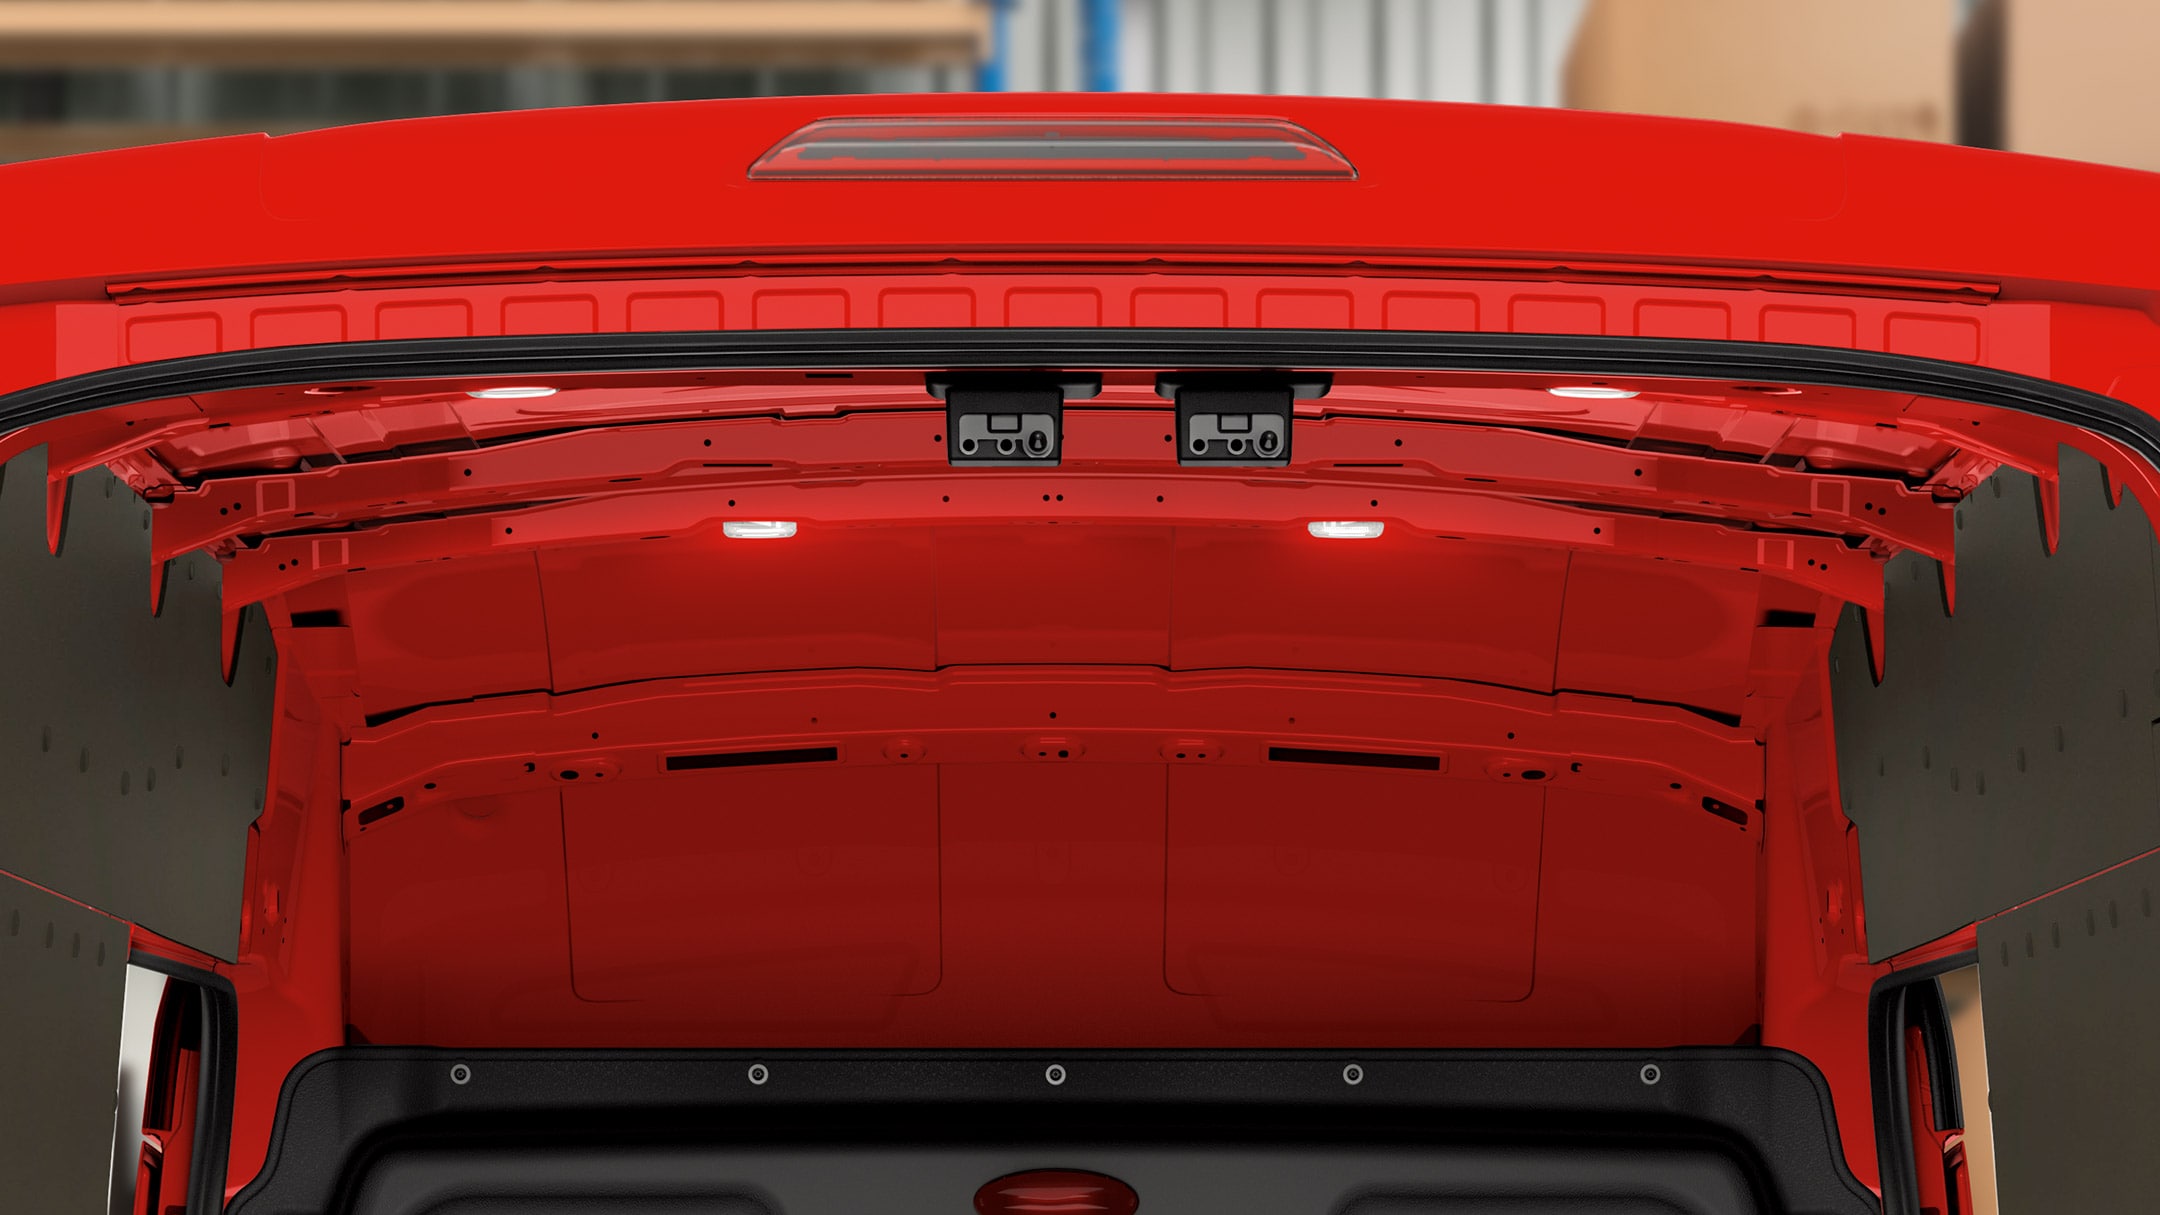 Ford Transit Fourgon, couleur rouge, vue arrière avec éclairage de l’espace de chargement en détail